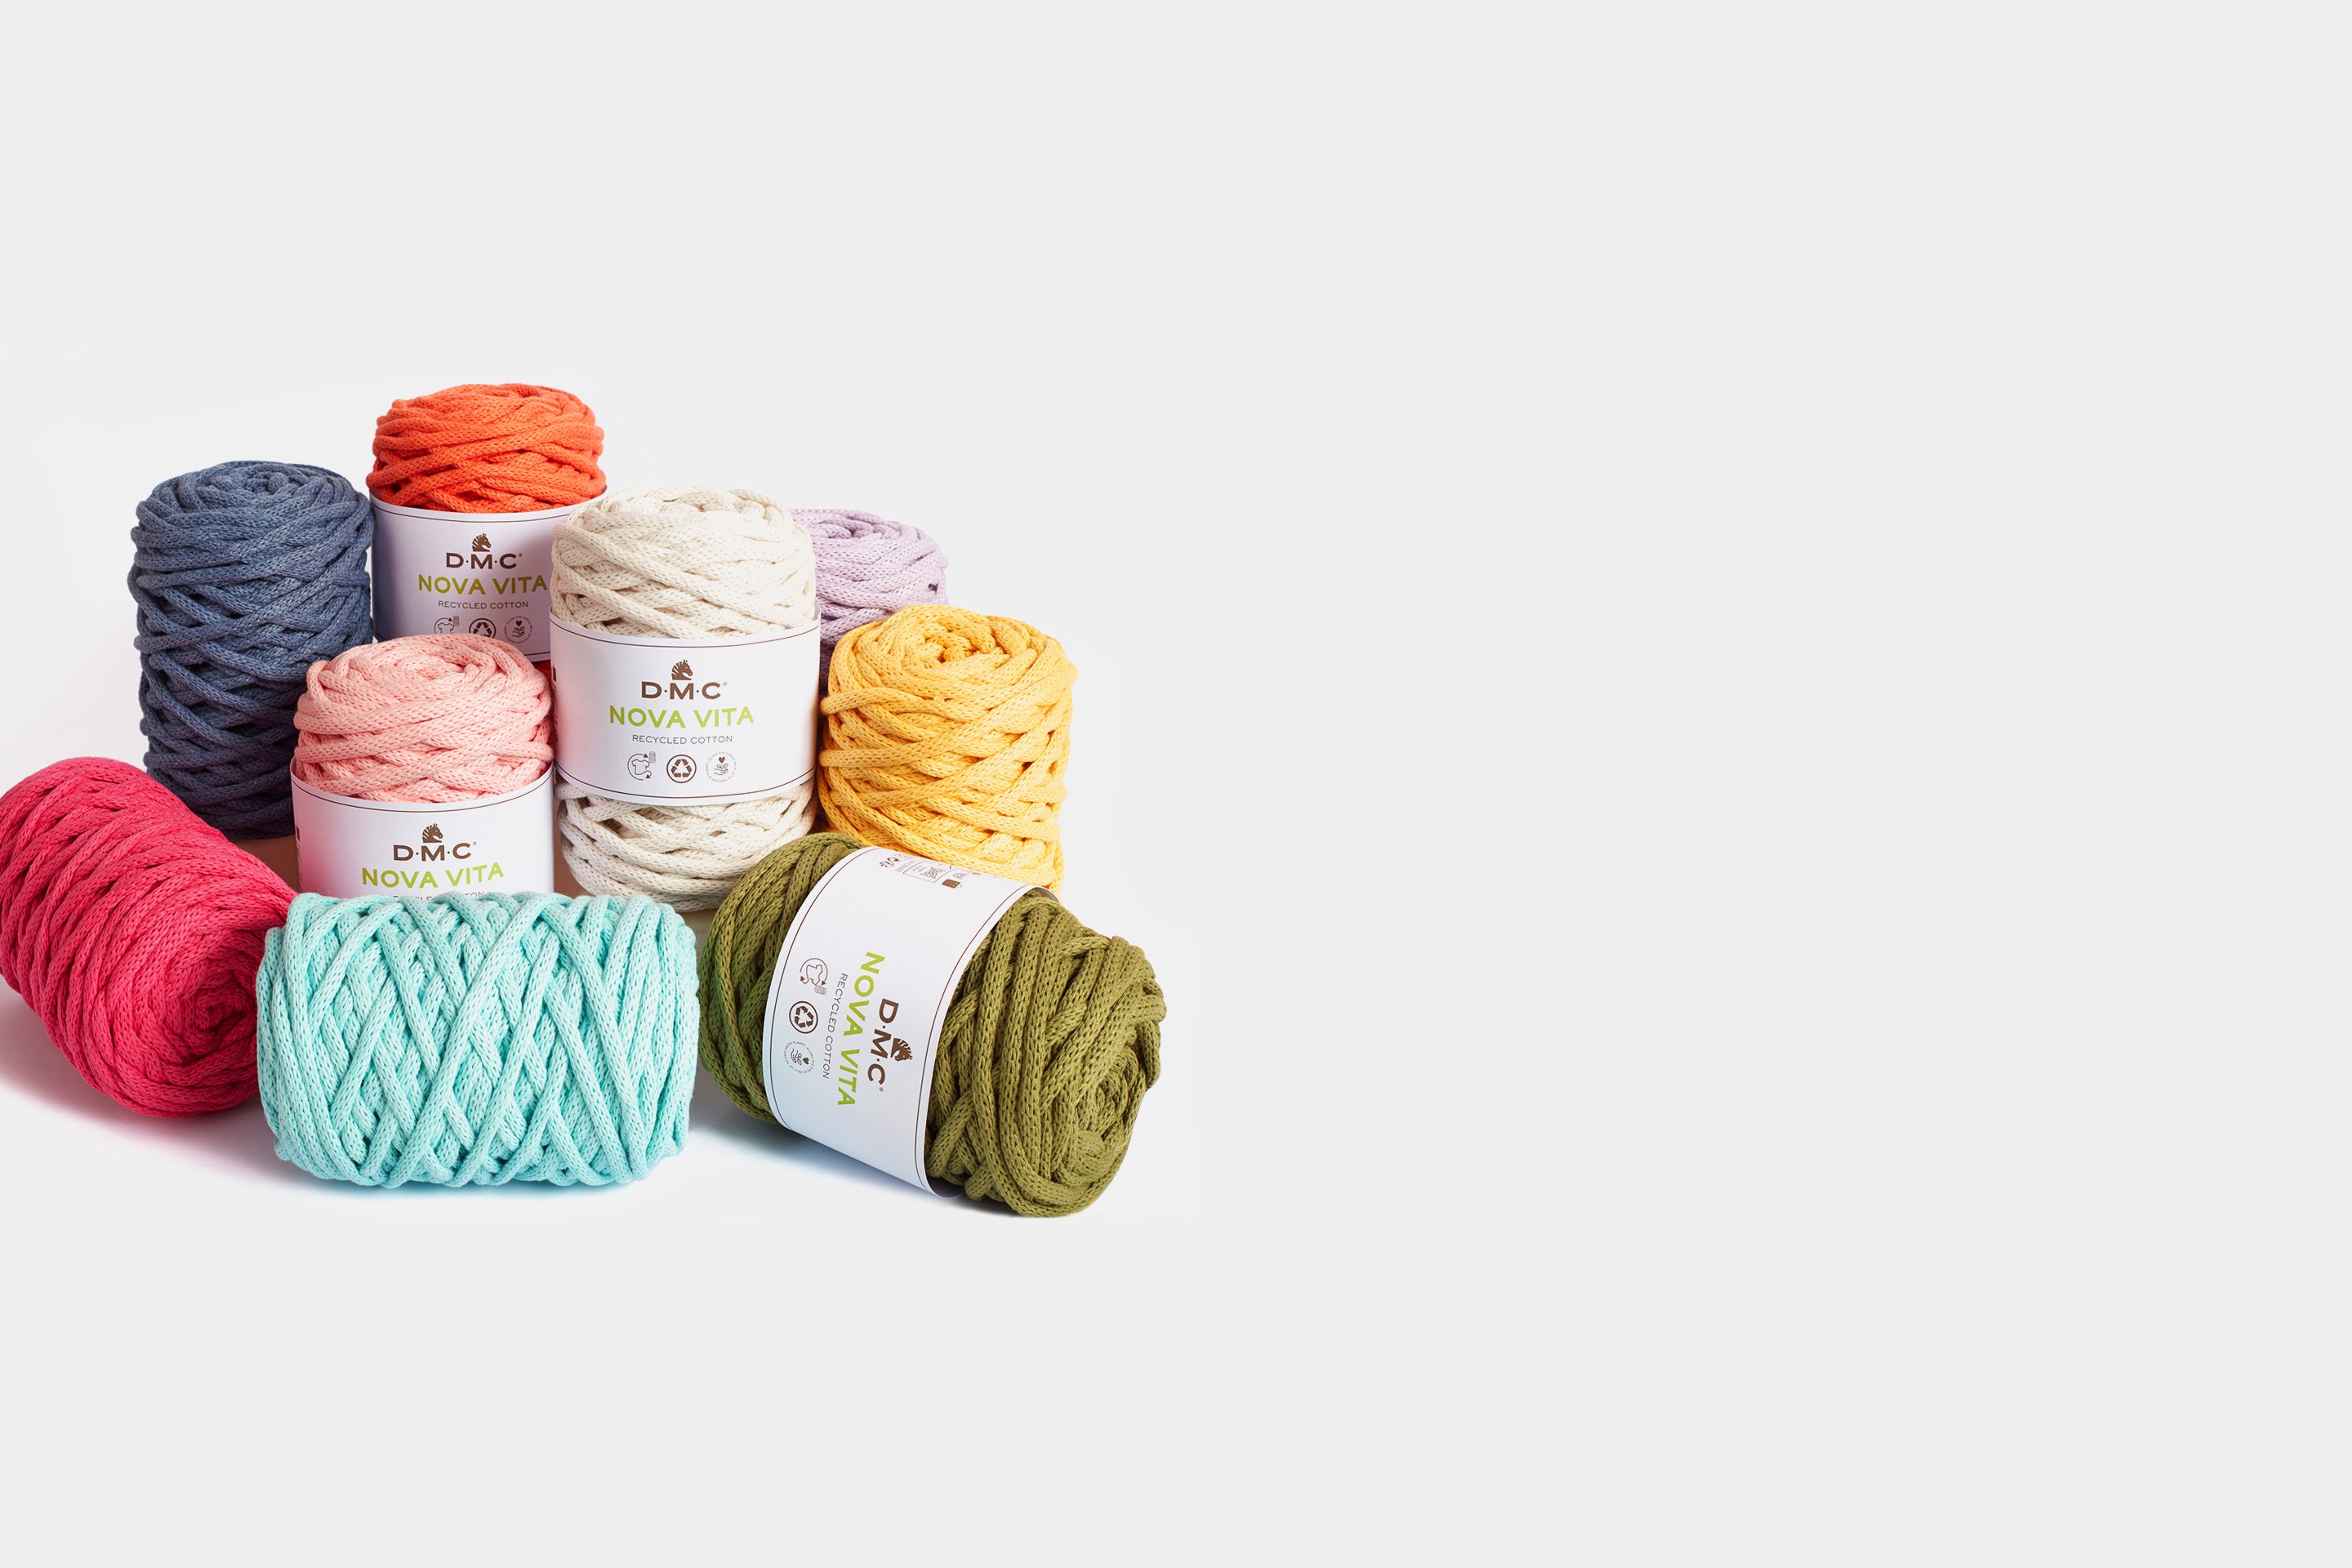 Nova Vita 12 - Crochet, Knitting and Macrame